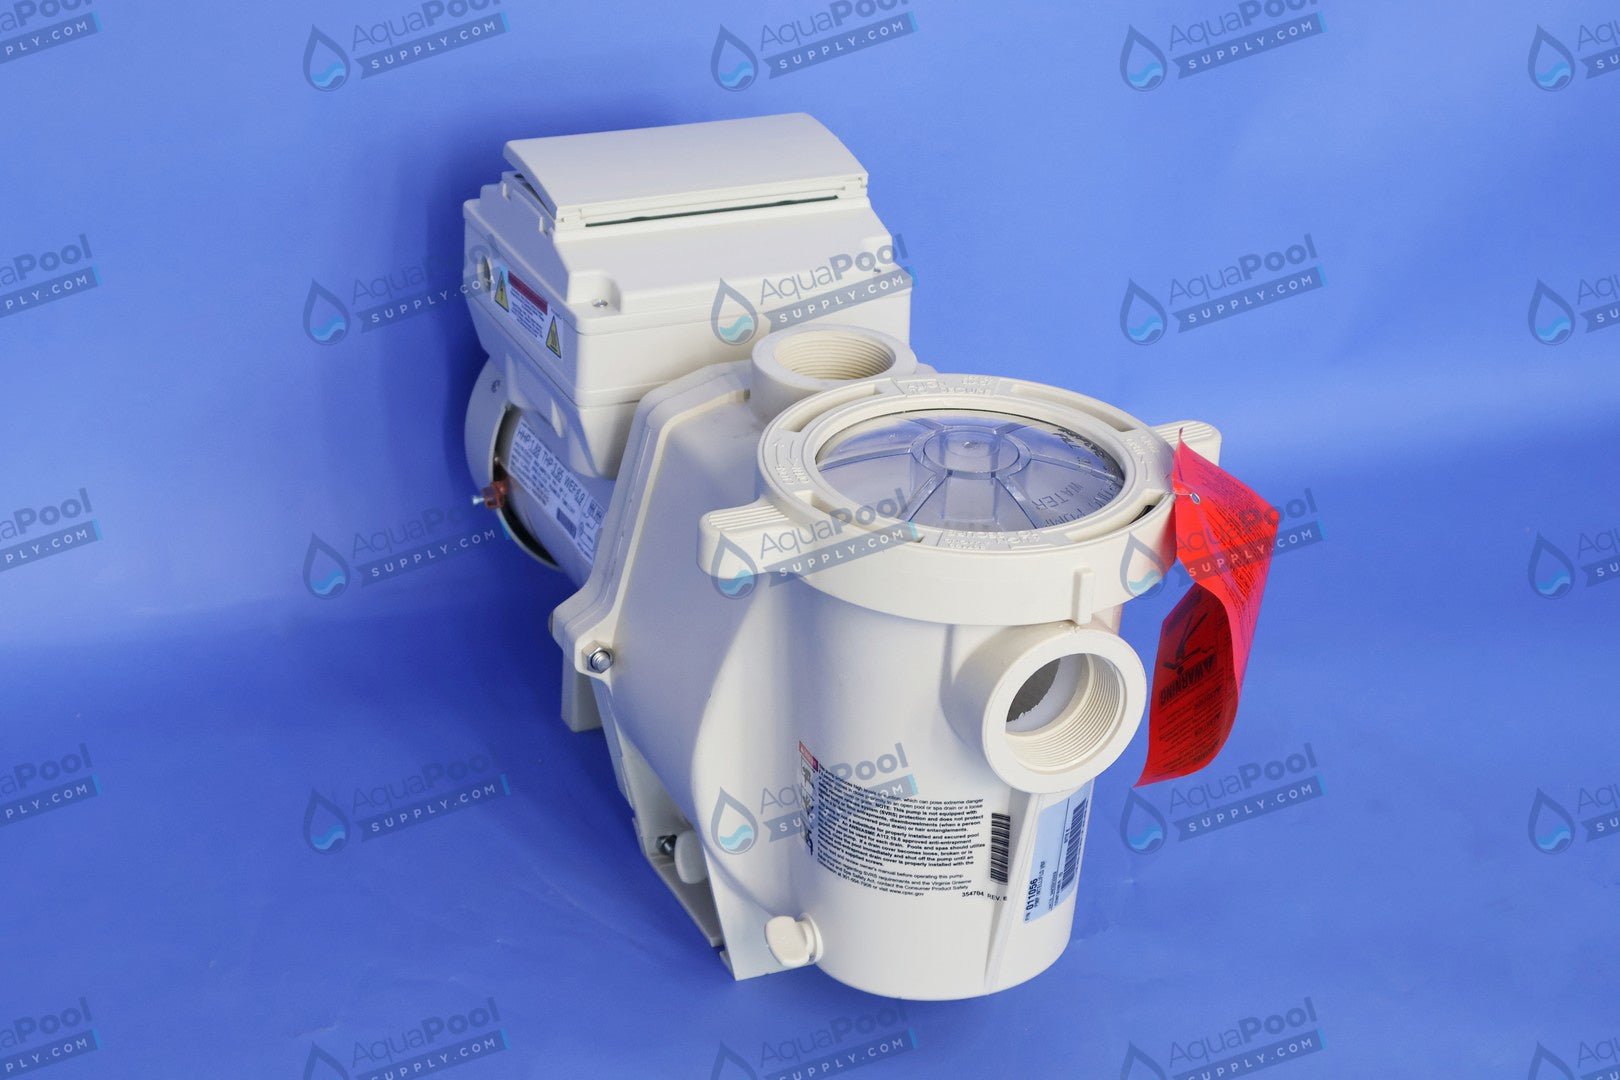 Pentair IntelliFlo® Variable Speed Pump EC-011028 (011056) - Variable Speed Pumps - img-5